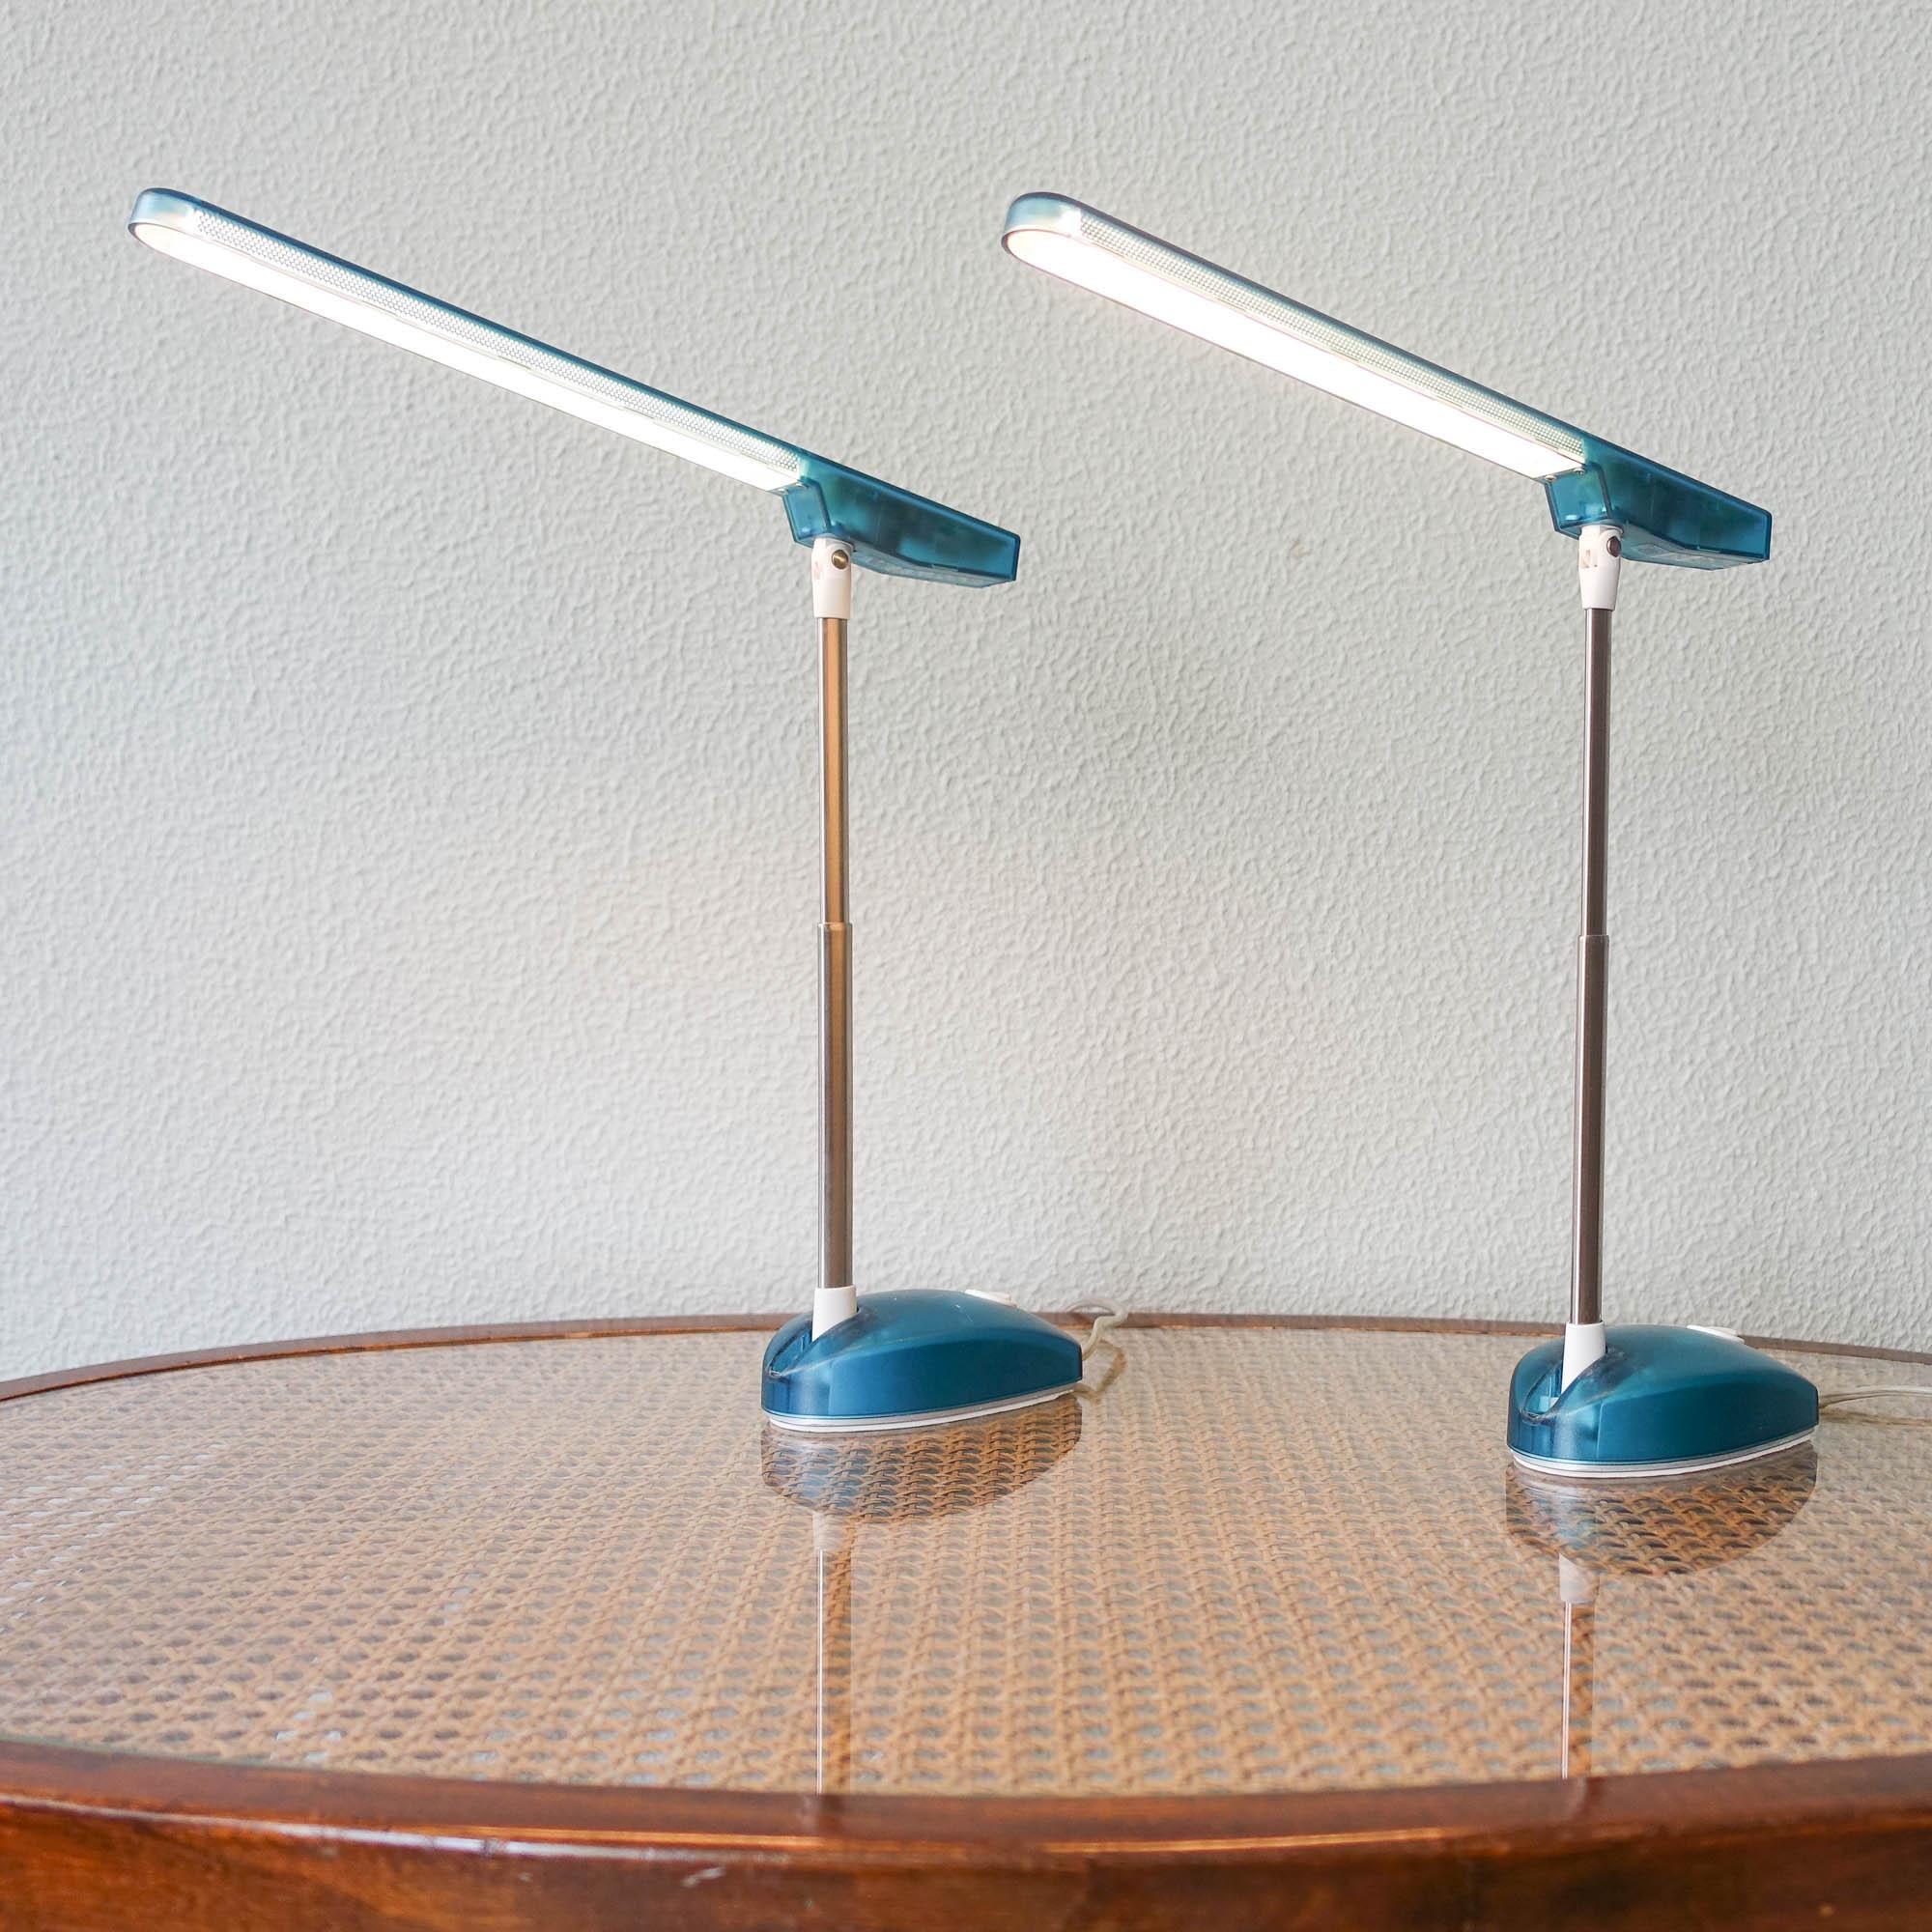 Dieses Paar Tischlampen, Modell Microlight, wurde von Ernesto Gismondi für Artemide in den 1990er Jahren entworfen. Es handelt sich um ein sehr technisches Design aus den 90er Jahren. Diese flexible Tischleuchte ist durch ihre spezielle Glühbirne